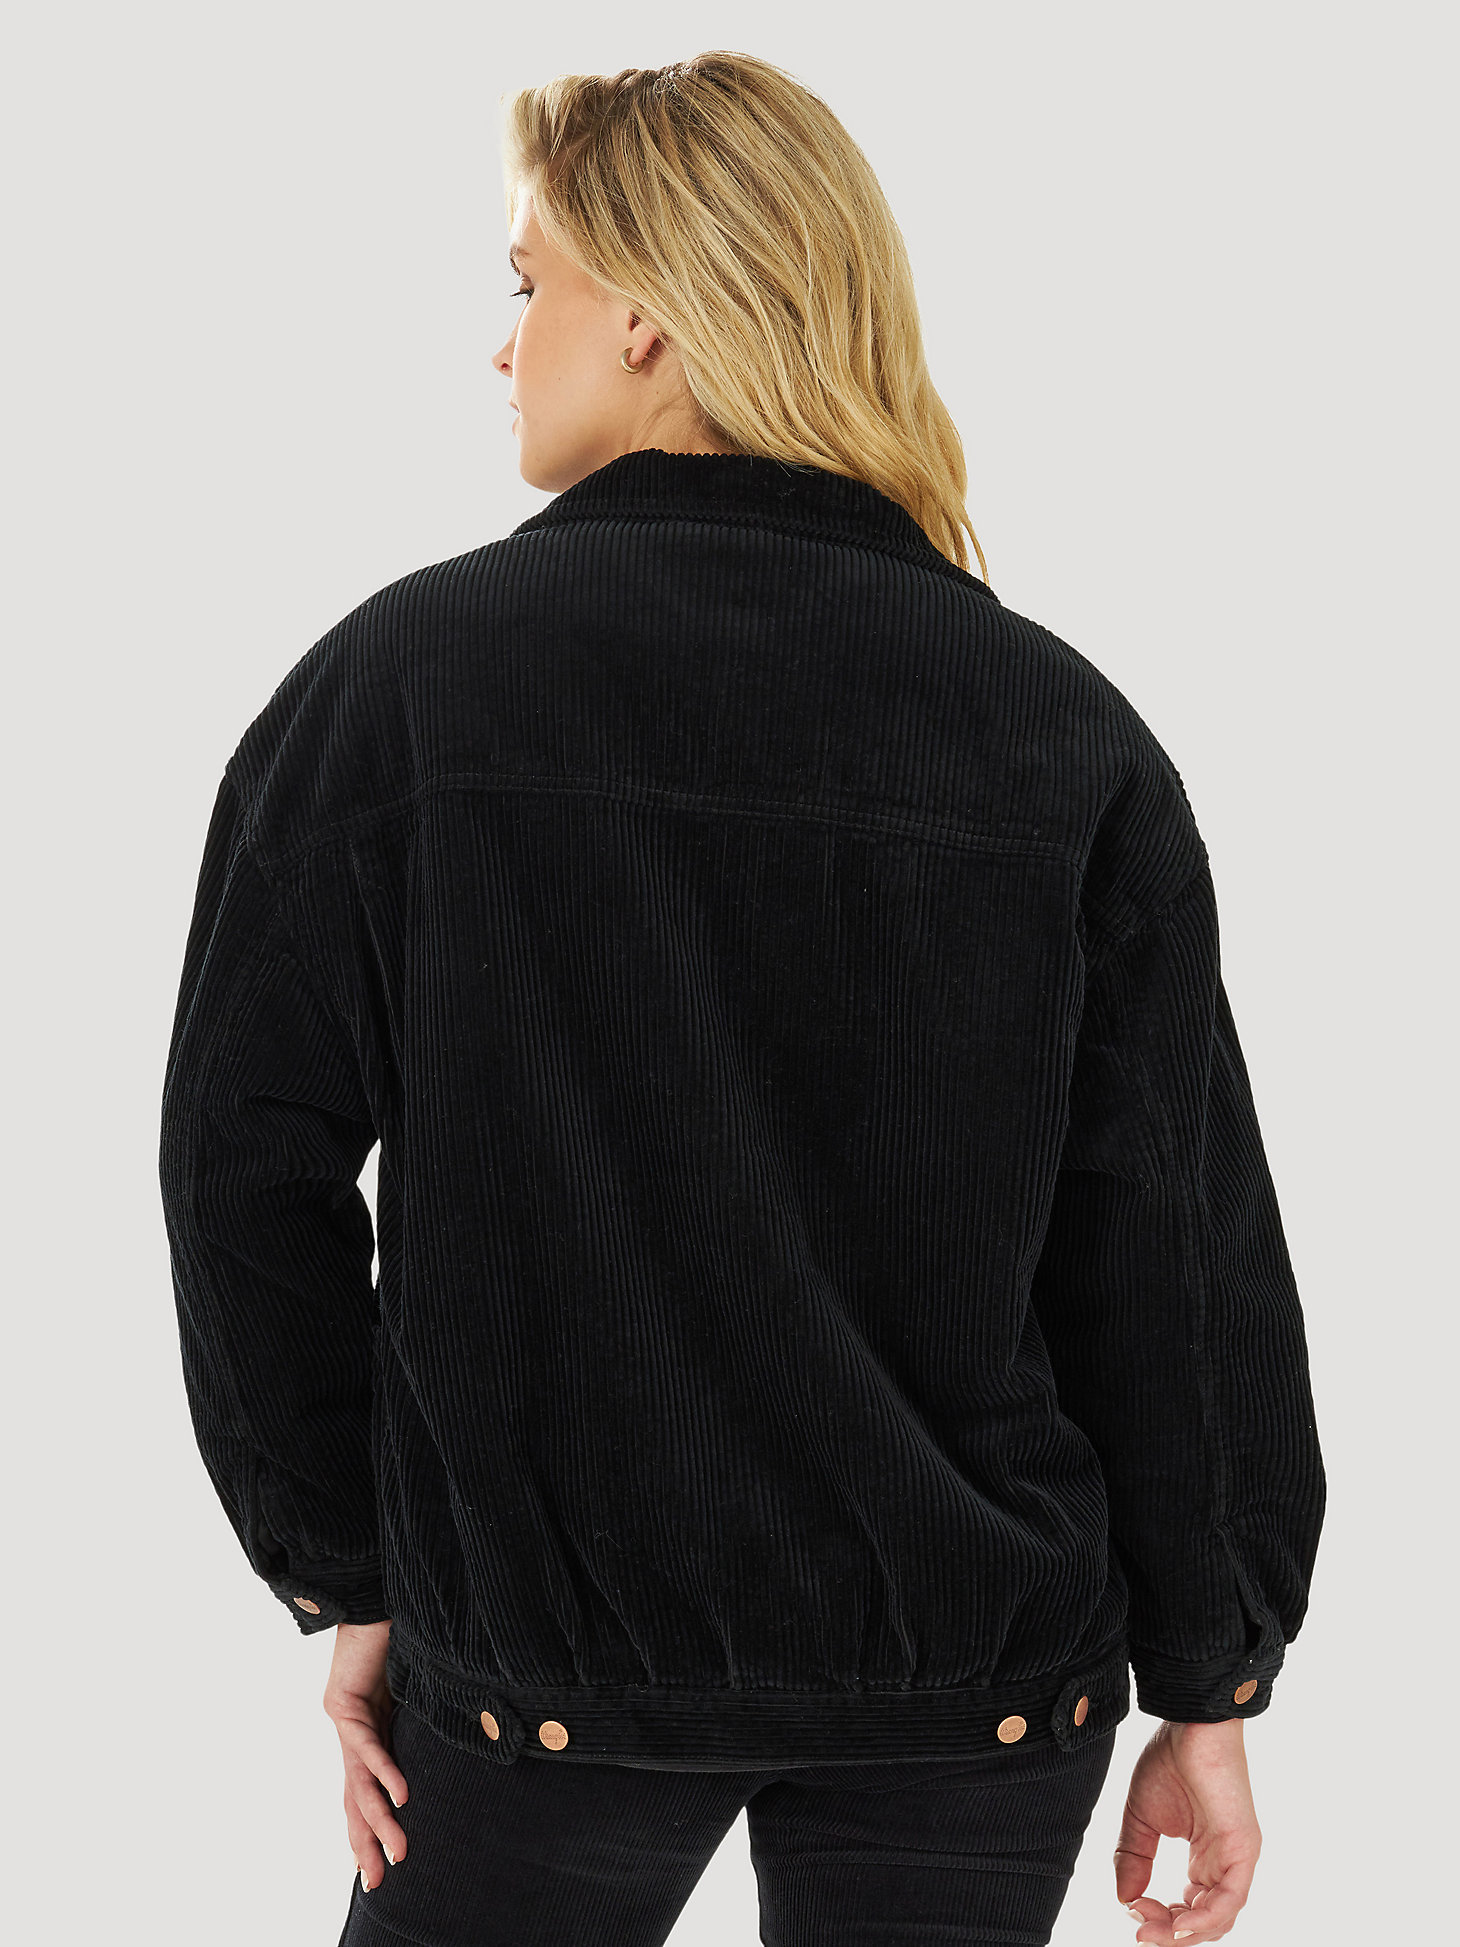 Women's Wrangler® Sherpa '80s Jacket in Caviar Black alternative view 1